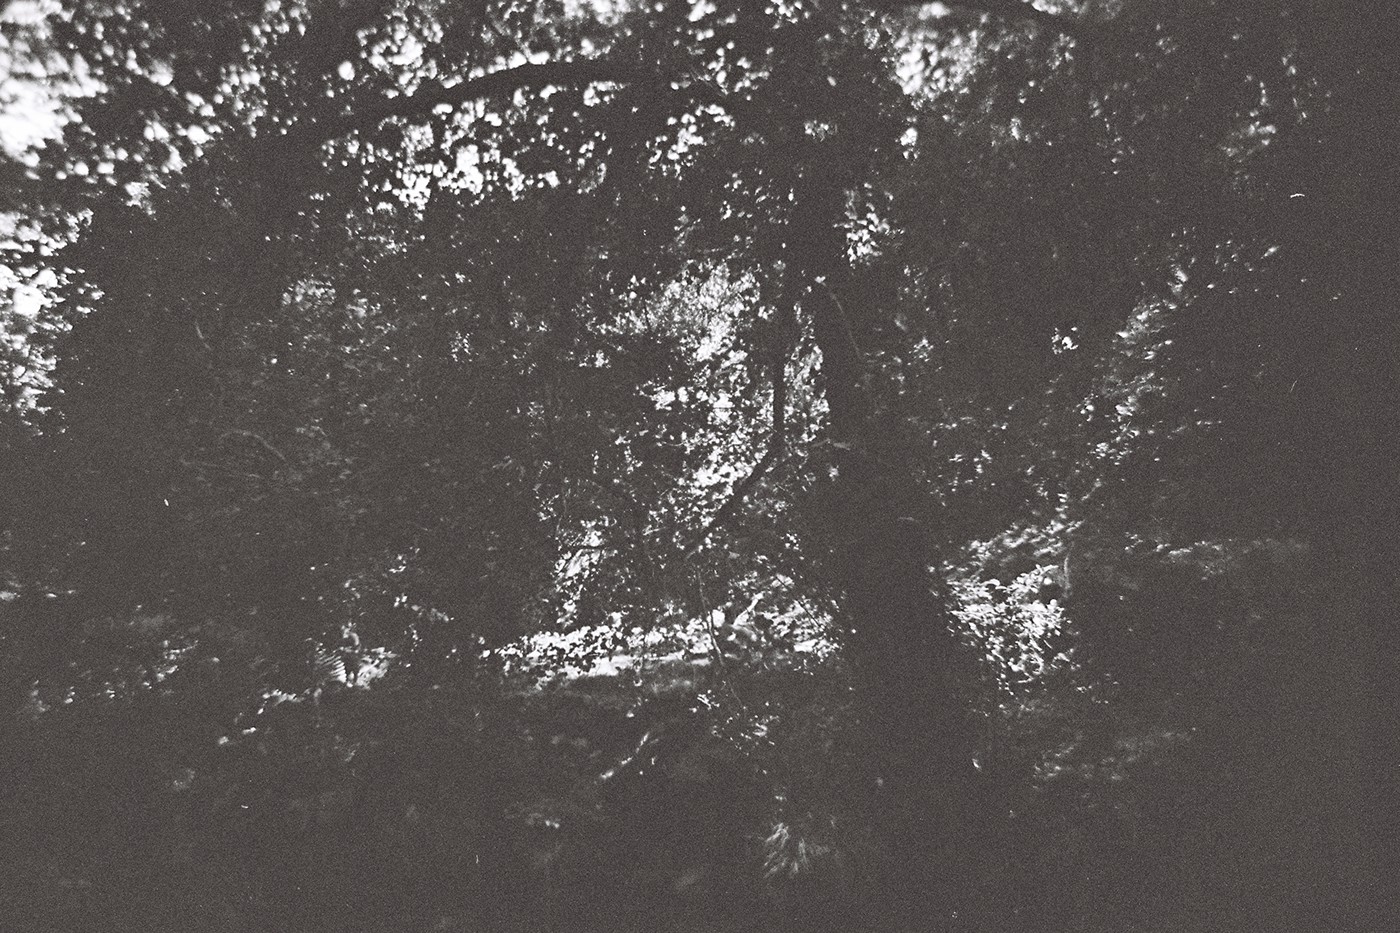 paredes de coura PDC black and white Filme 35mm Film   analog Lomography